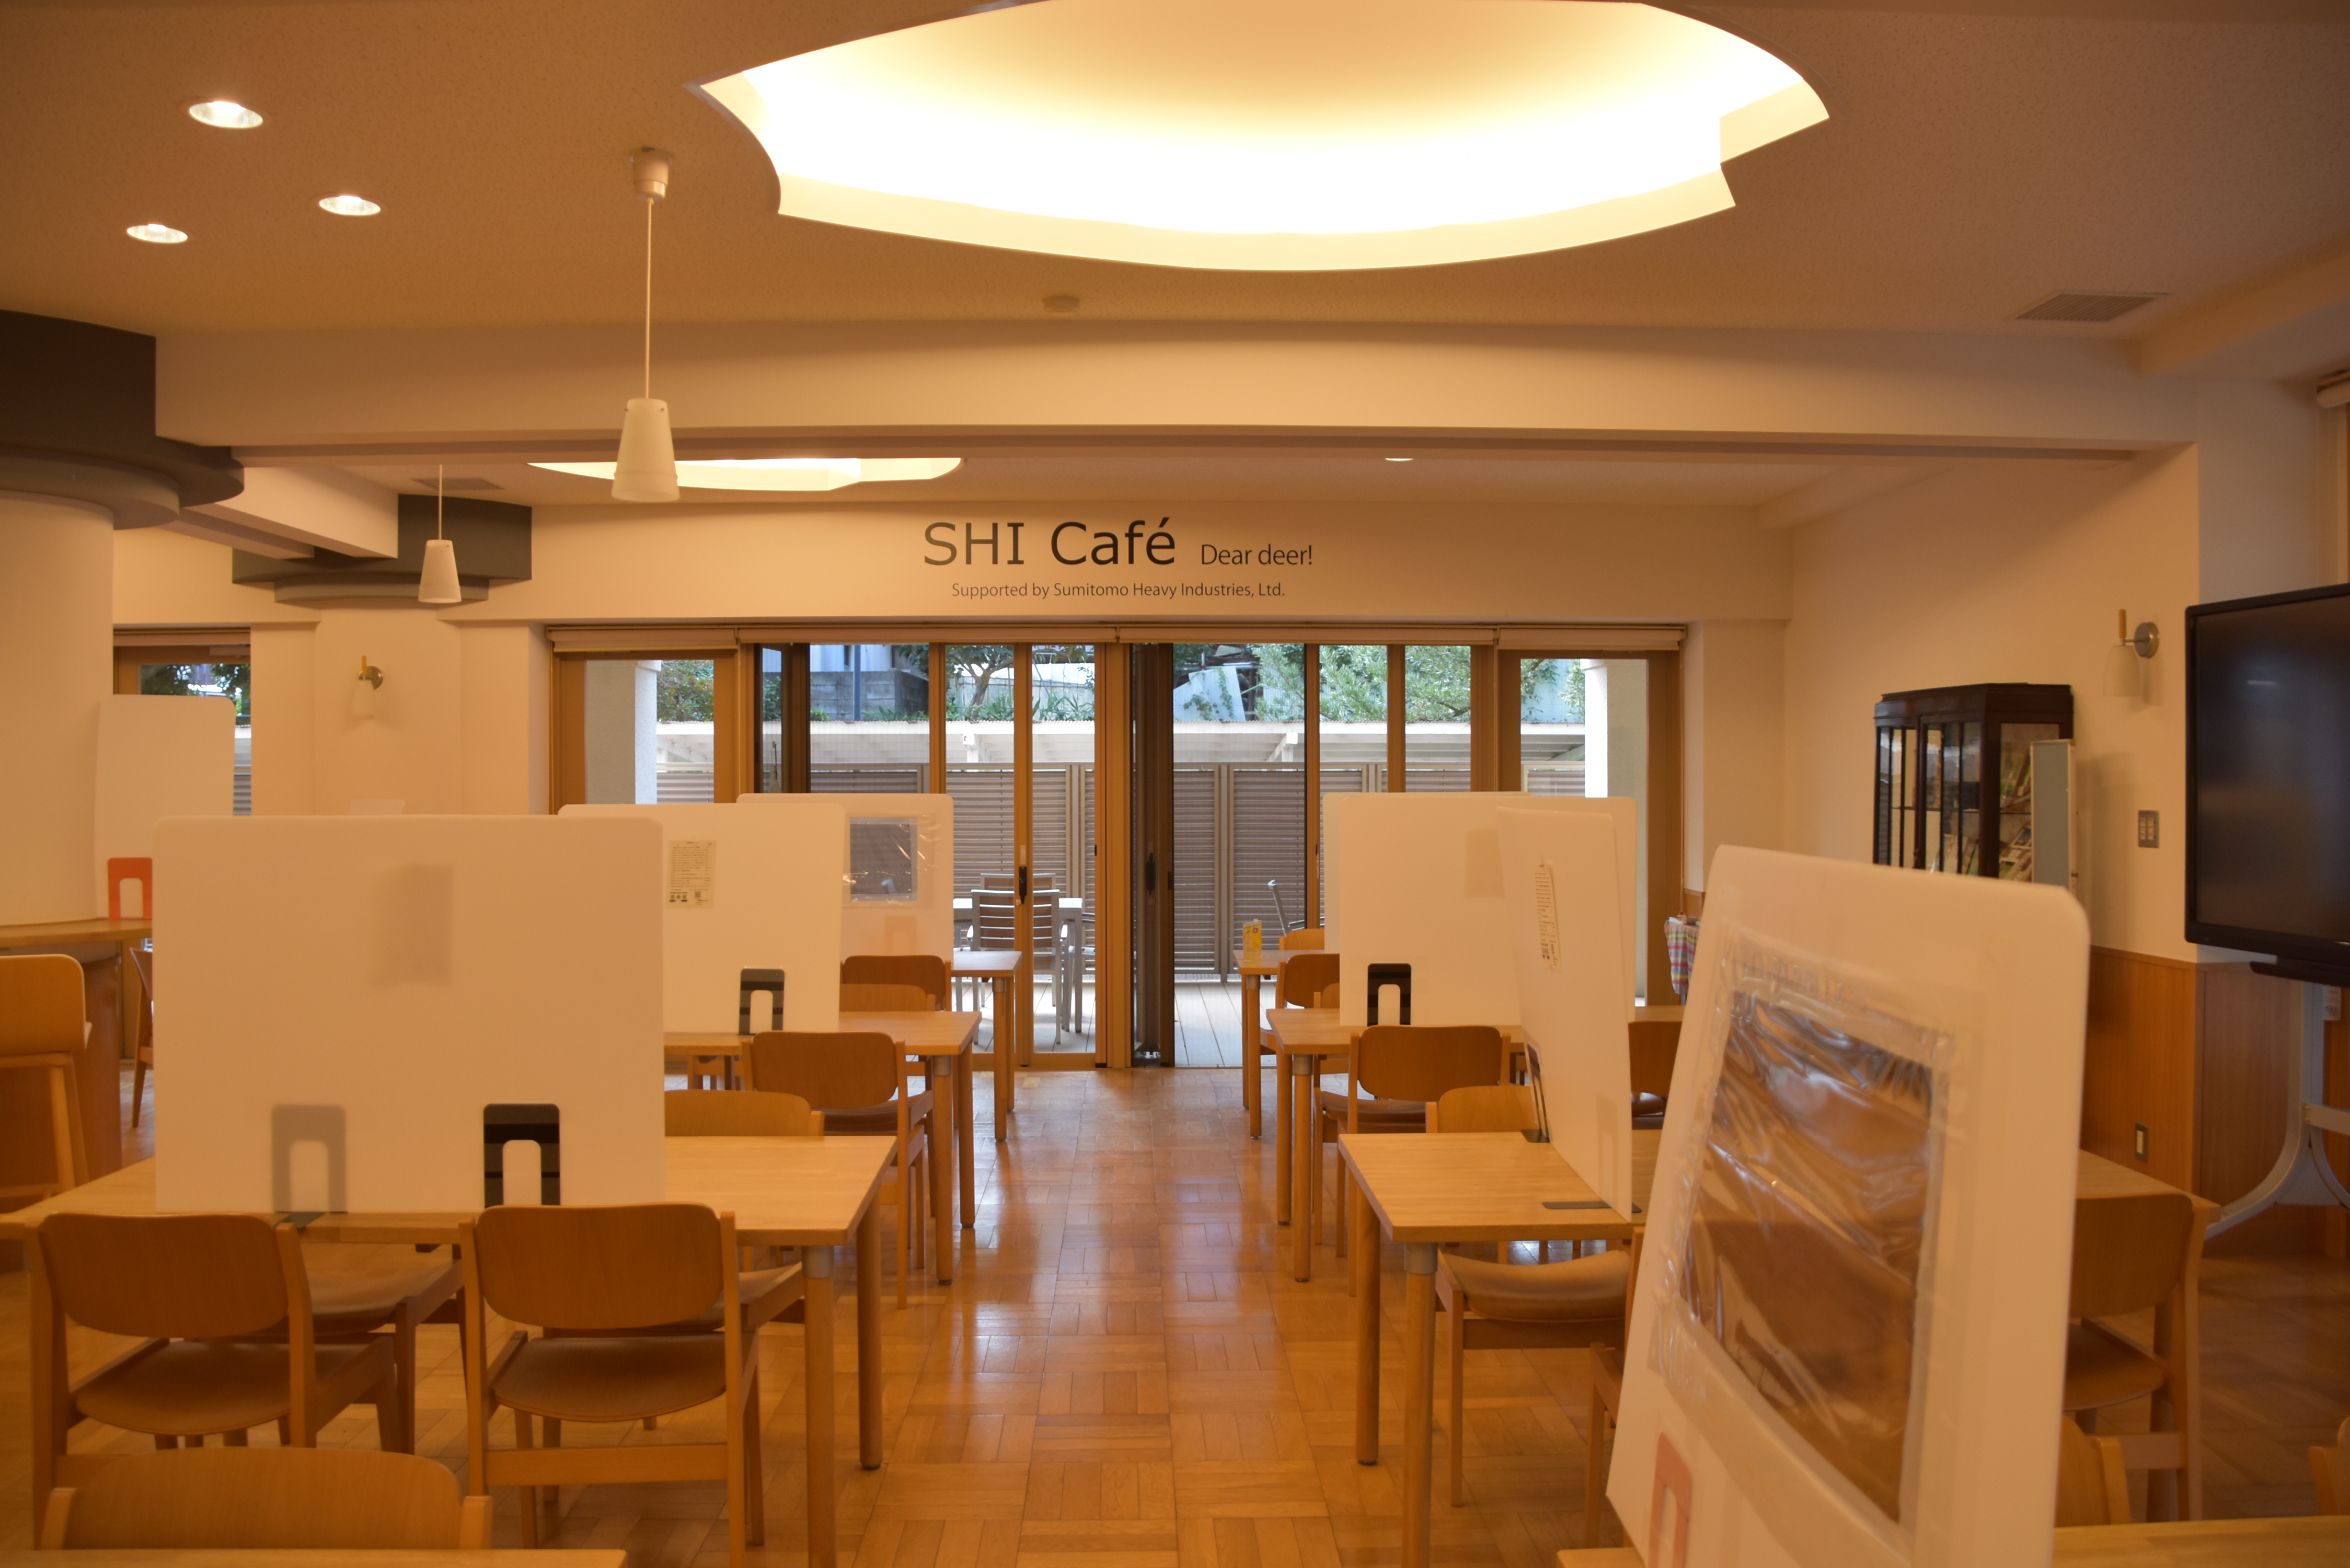 SHI Café Dear deer!